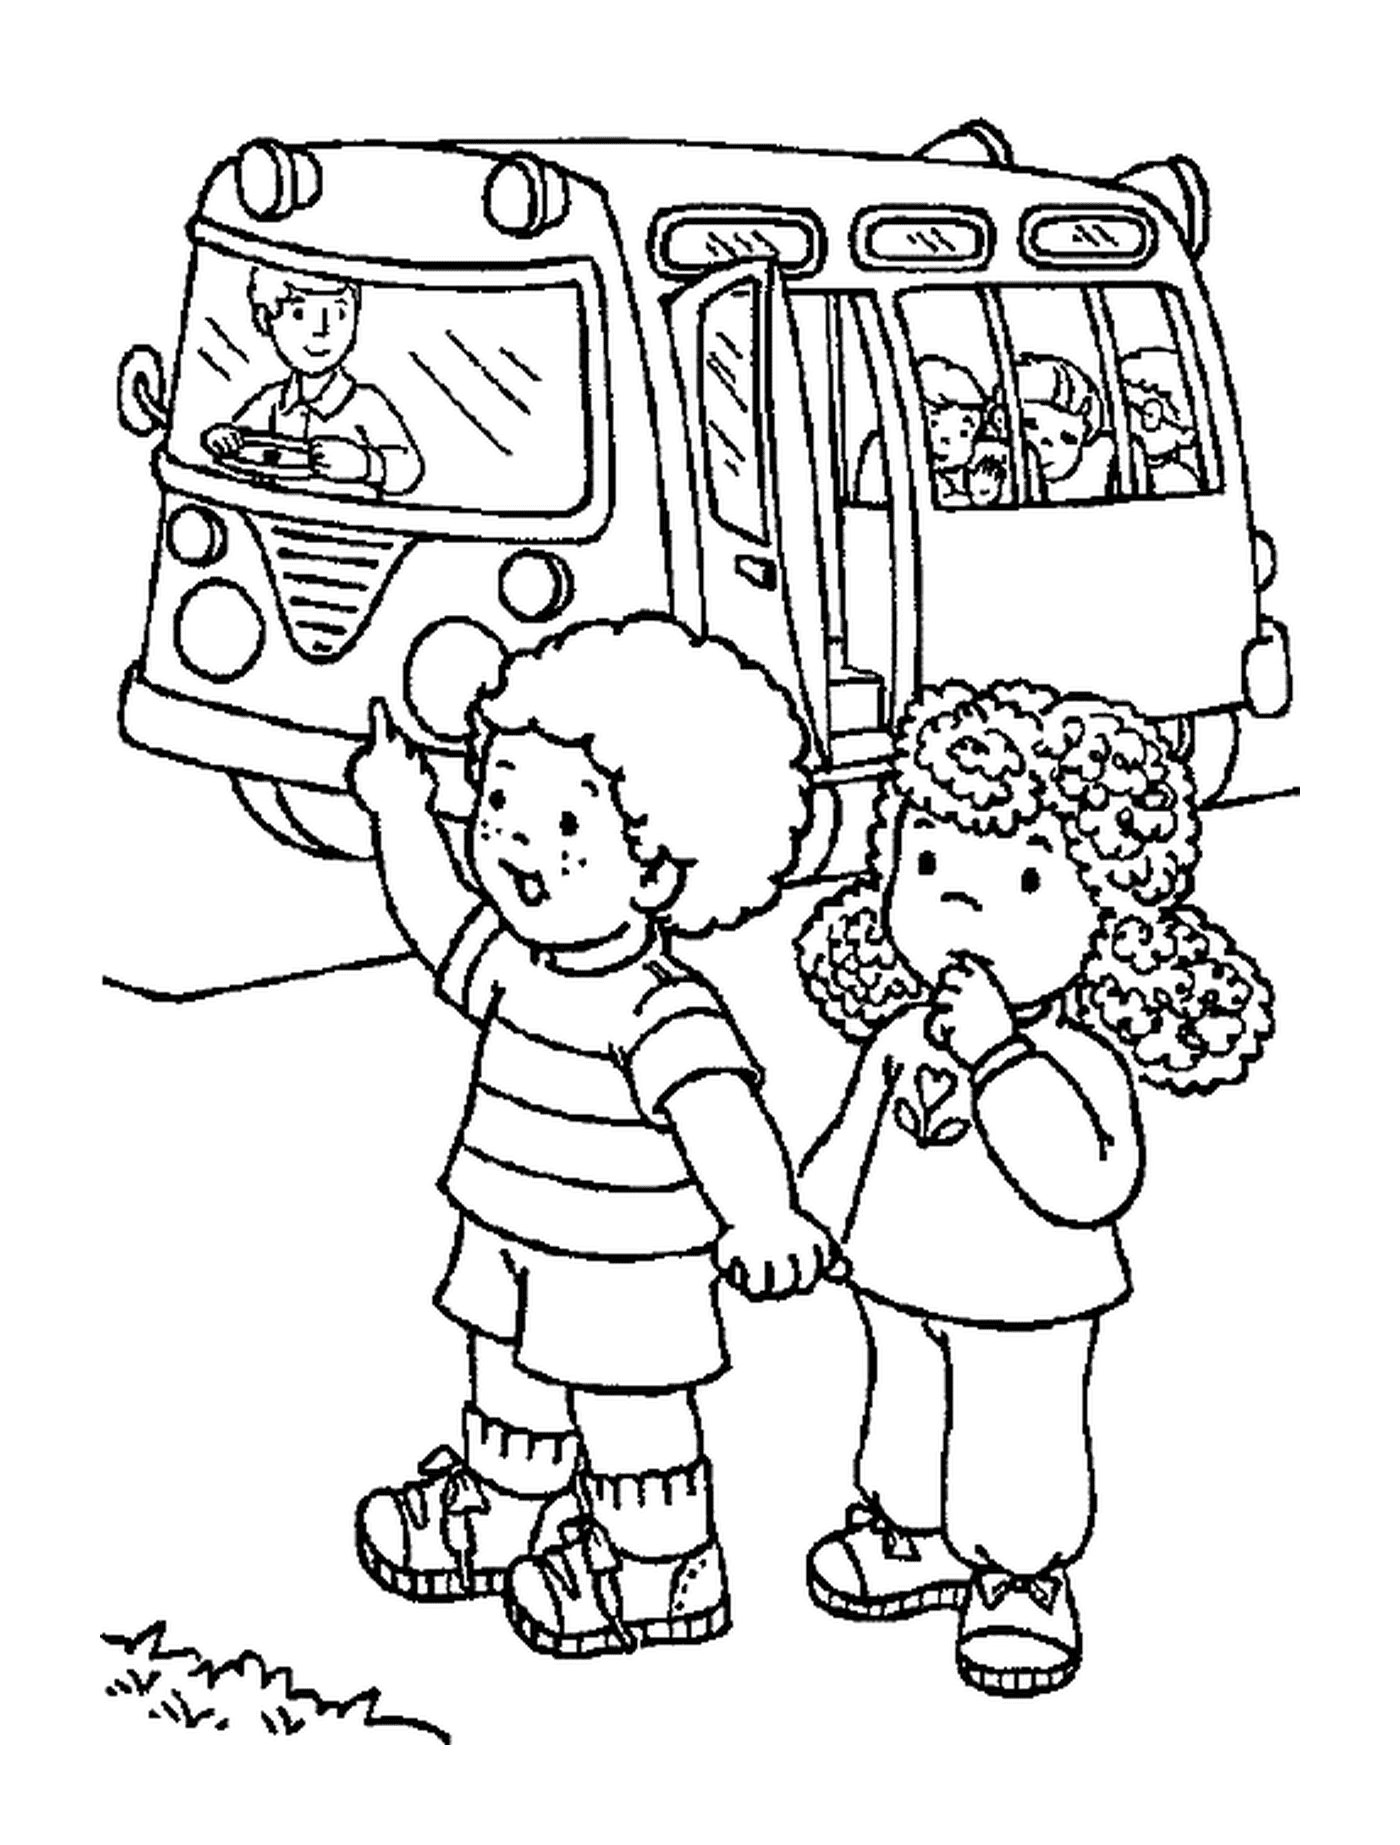  Двое детей возвращаются из школы на школьном автобусе 